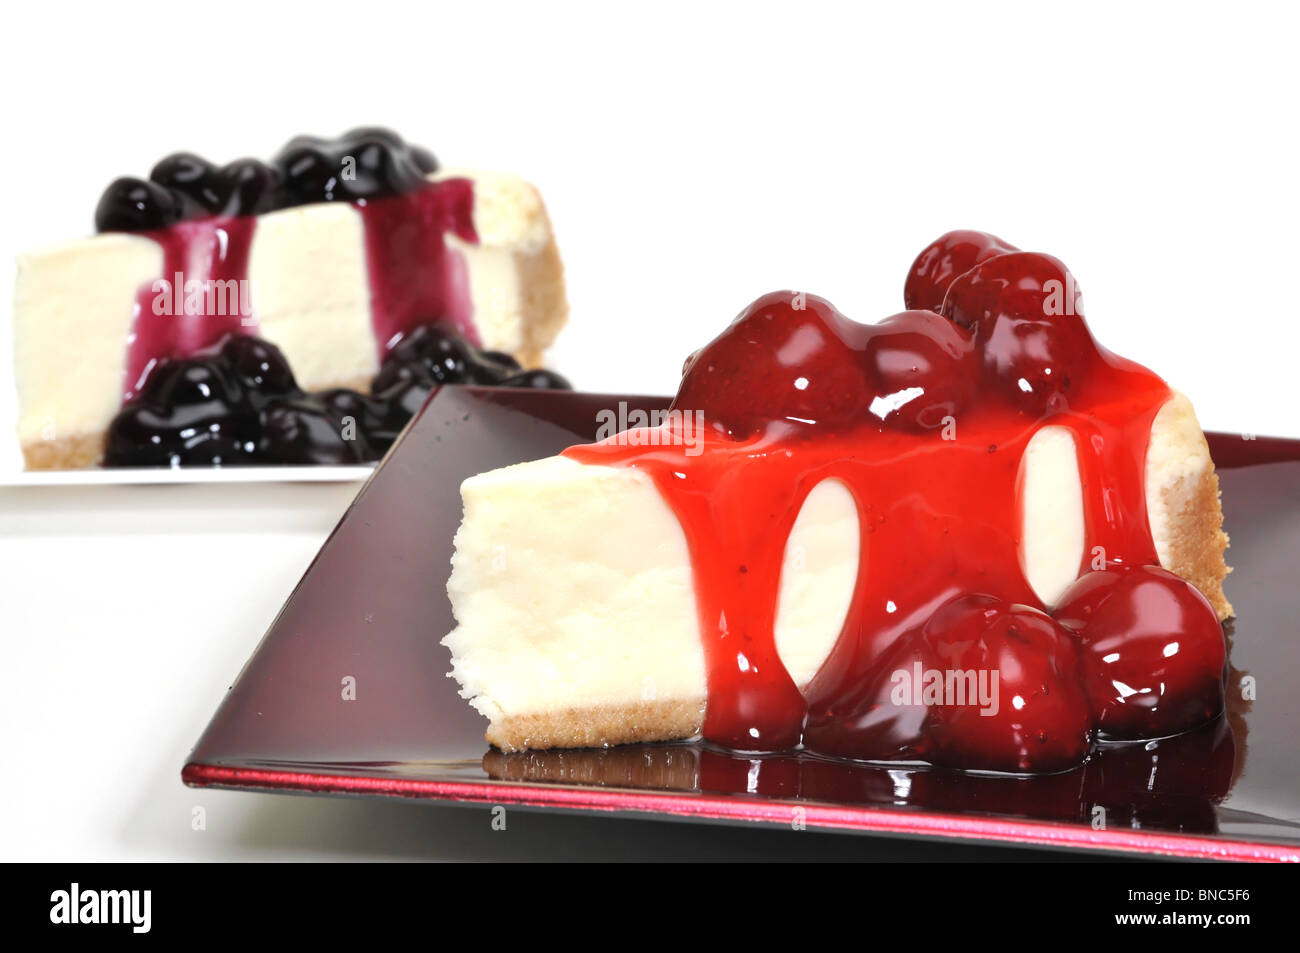 Tranches de gâteau au fromage aux fraises et bleuets isolé sur fond blanc. Banque D'Images